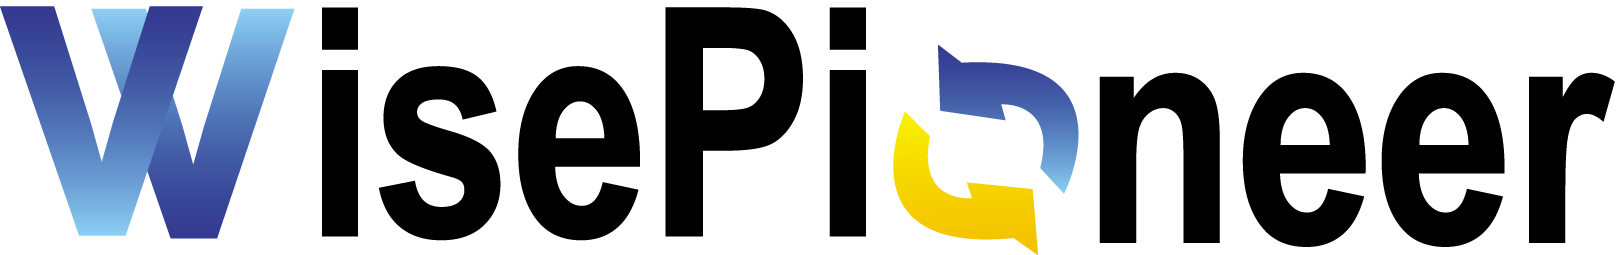 旭東機械 logo.png